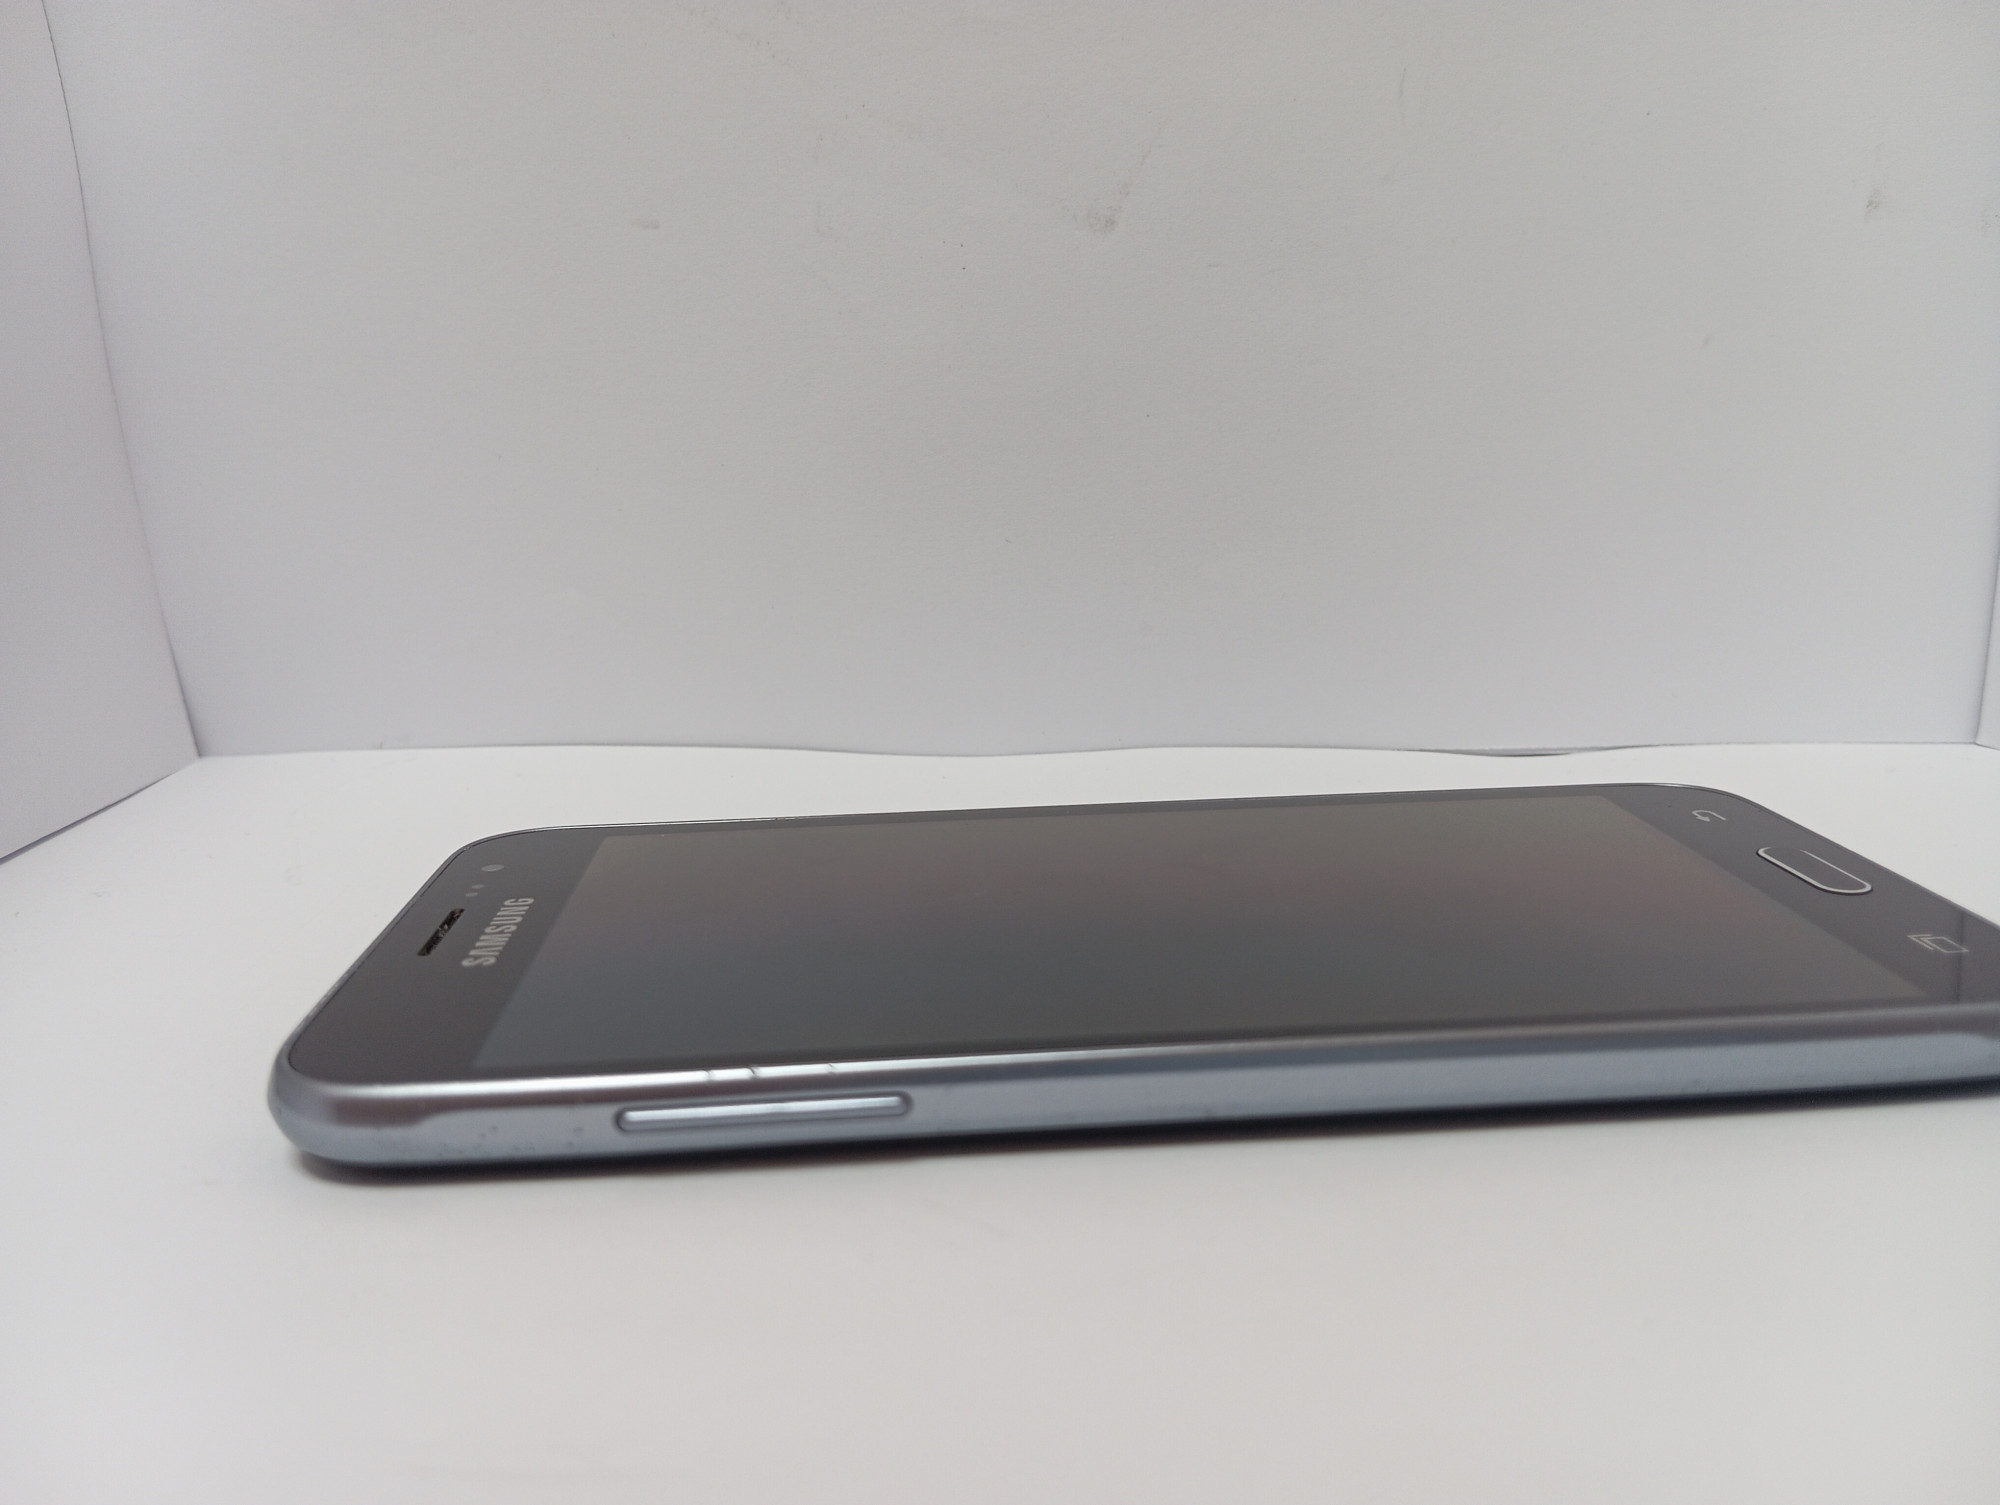 Samsung Galaxy J3 (SM-J320F) 1/8Gb 3